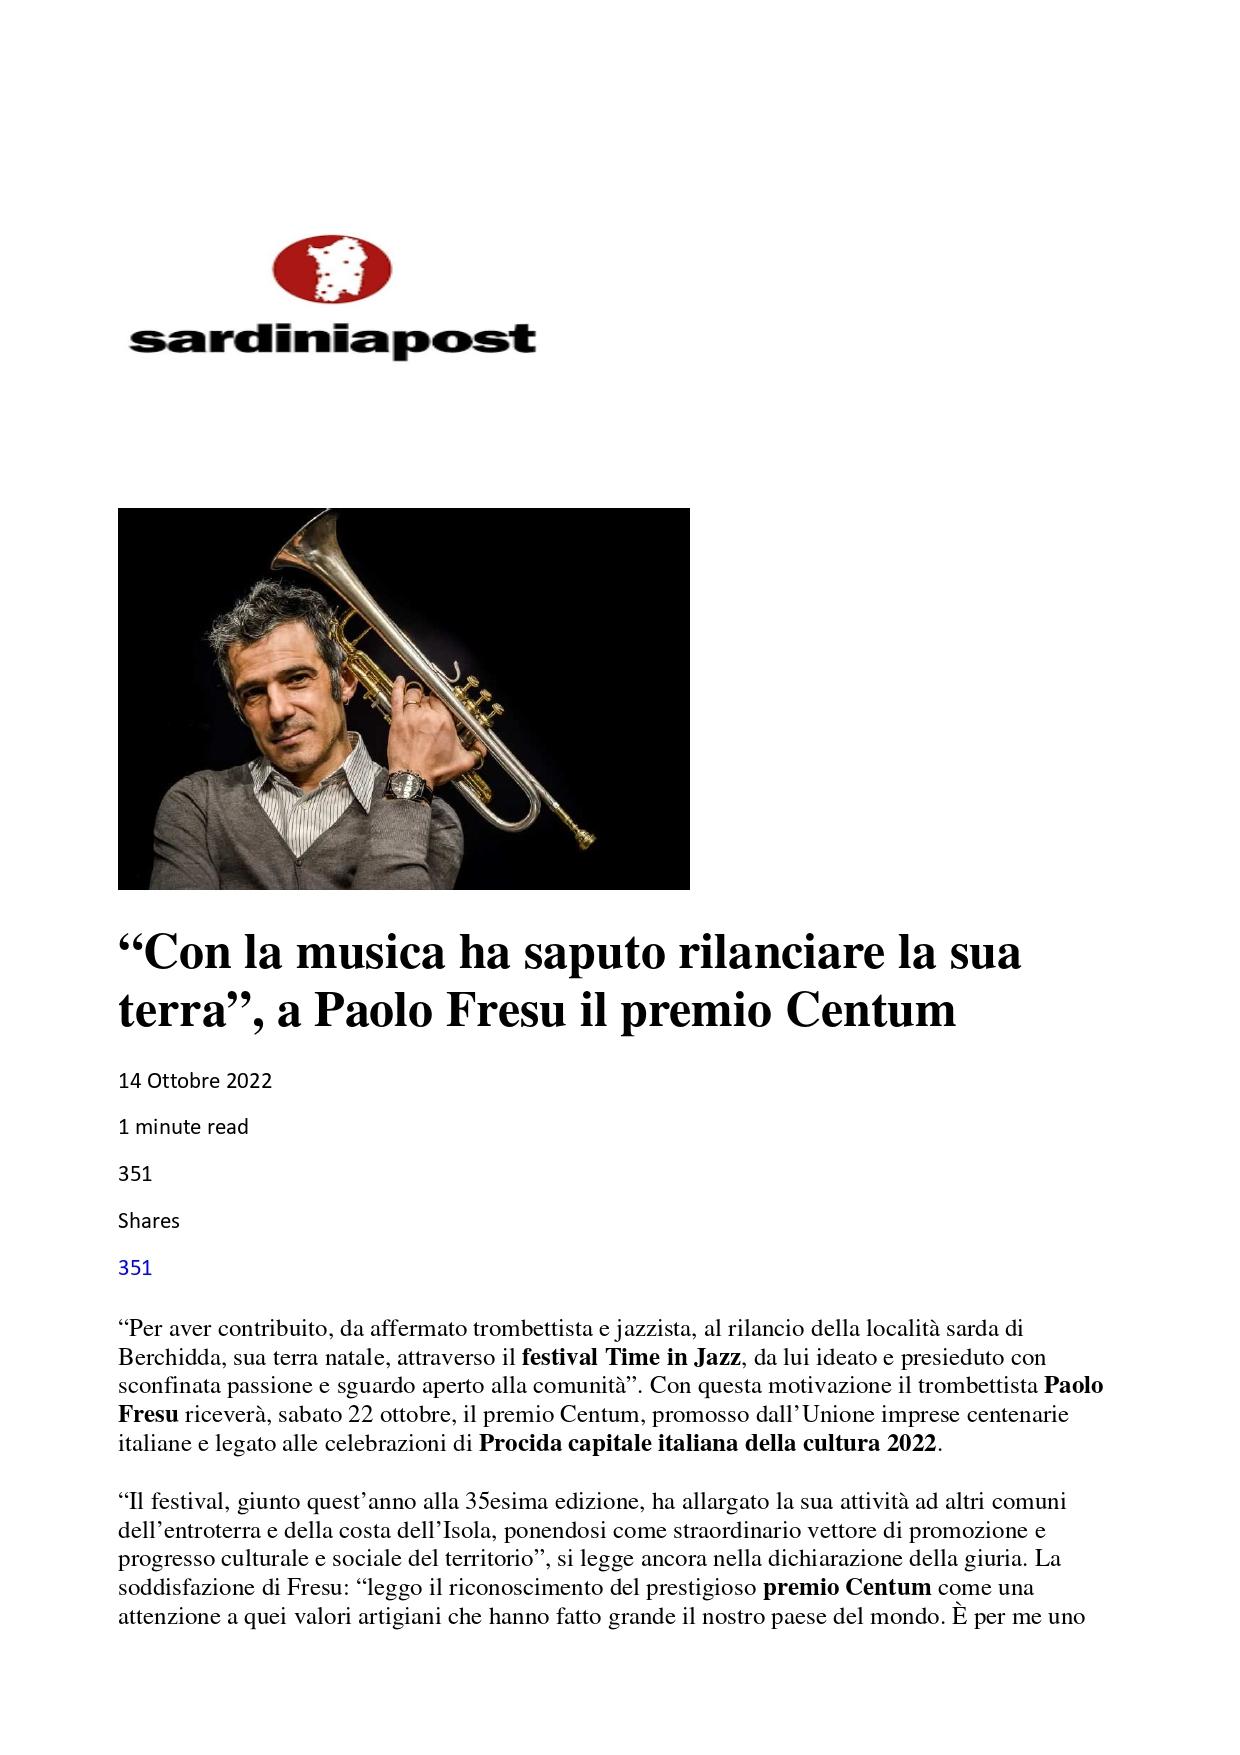 Sardinia Post Con la musica ha saputo rilanciare la sua terra il premio Centum a Paolo Fresu 14 ottobre 2022 page 0001